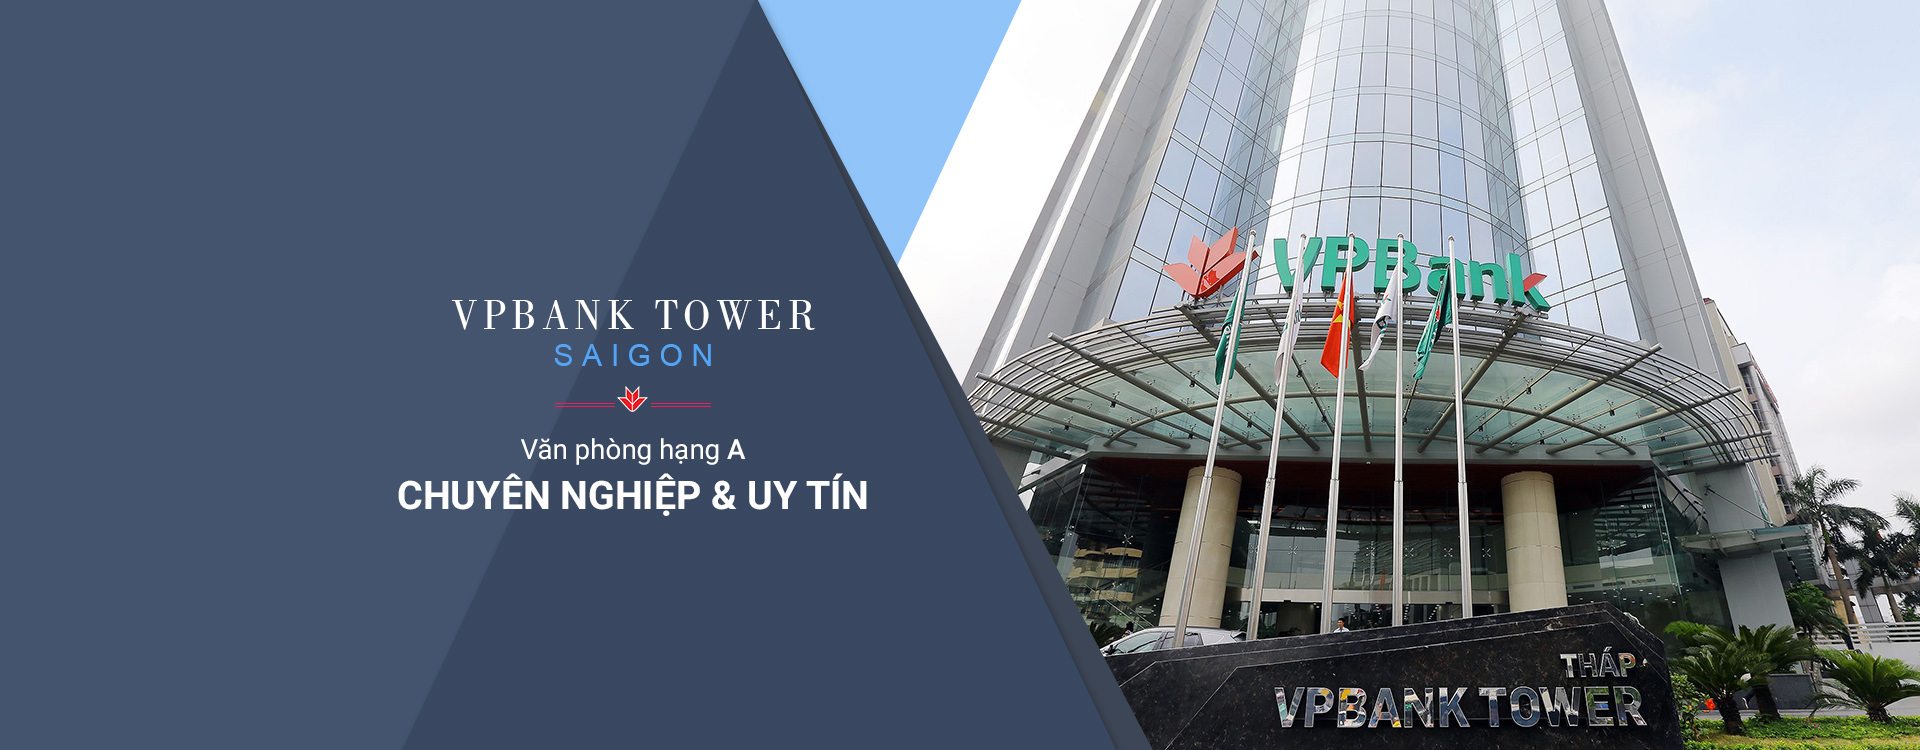 VPbank Tower Saigon